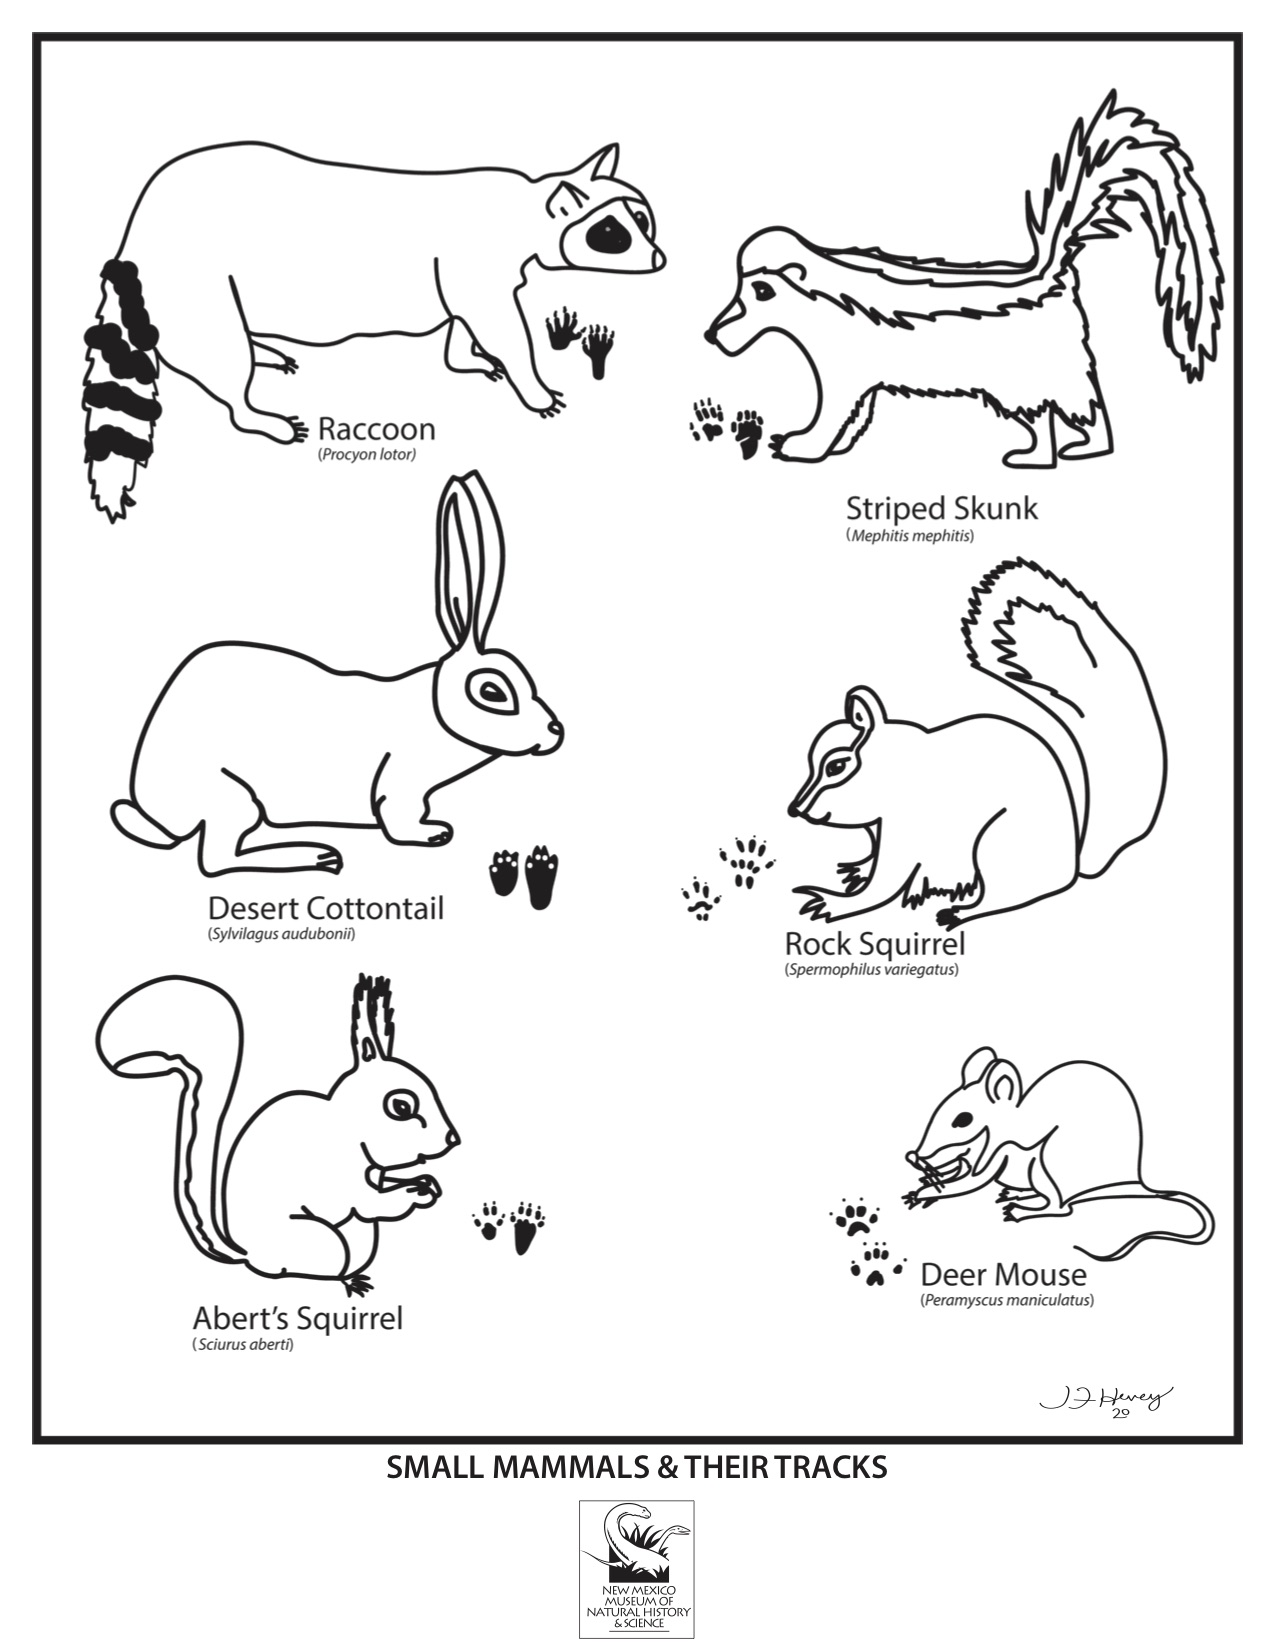 Mammals and Tracks Coloring Sheet